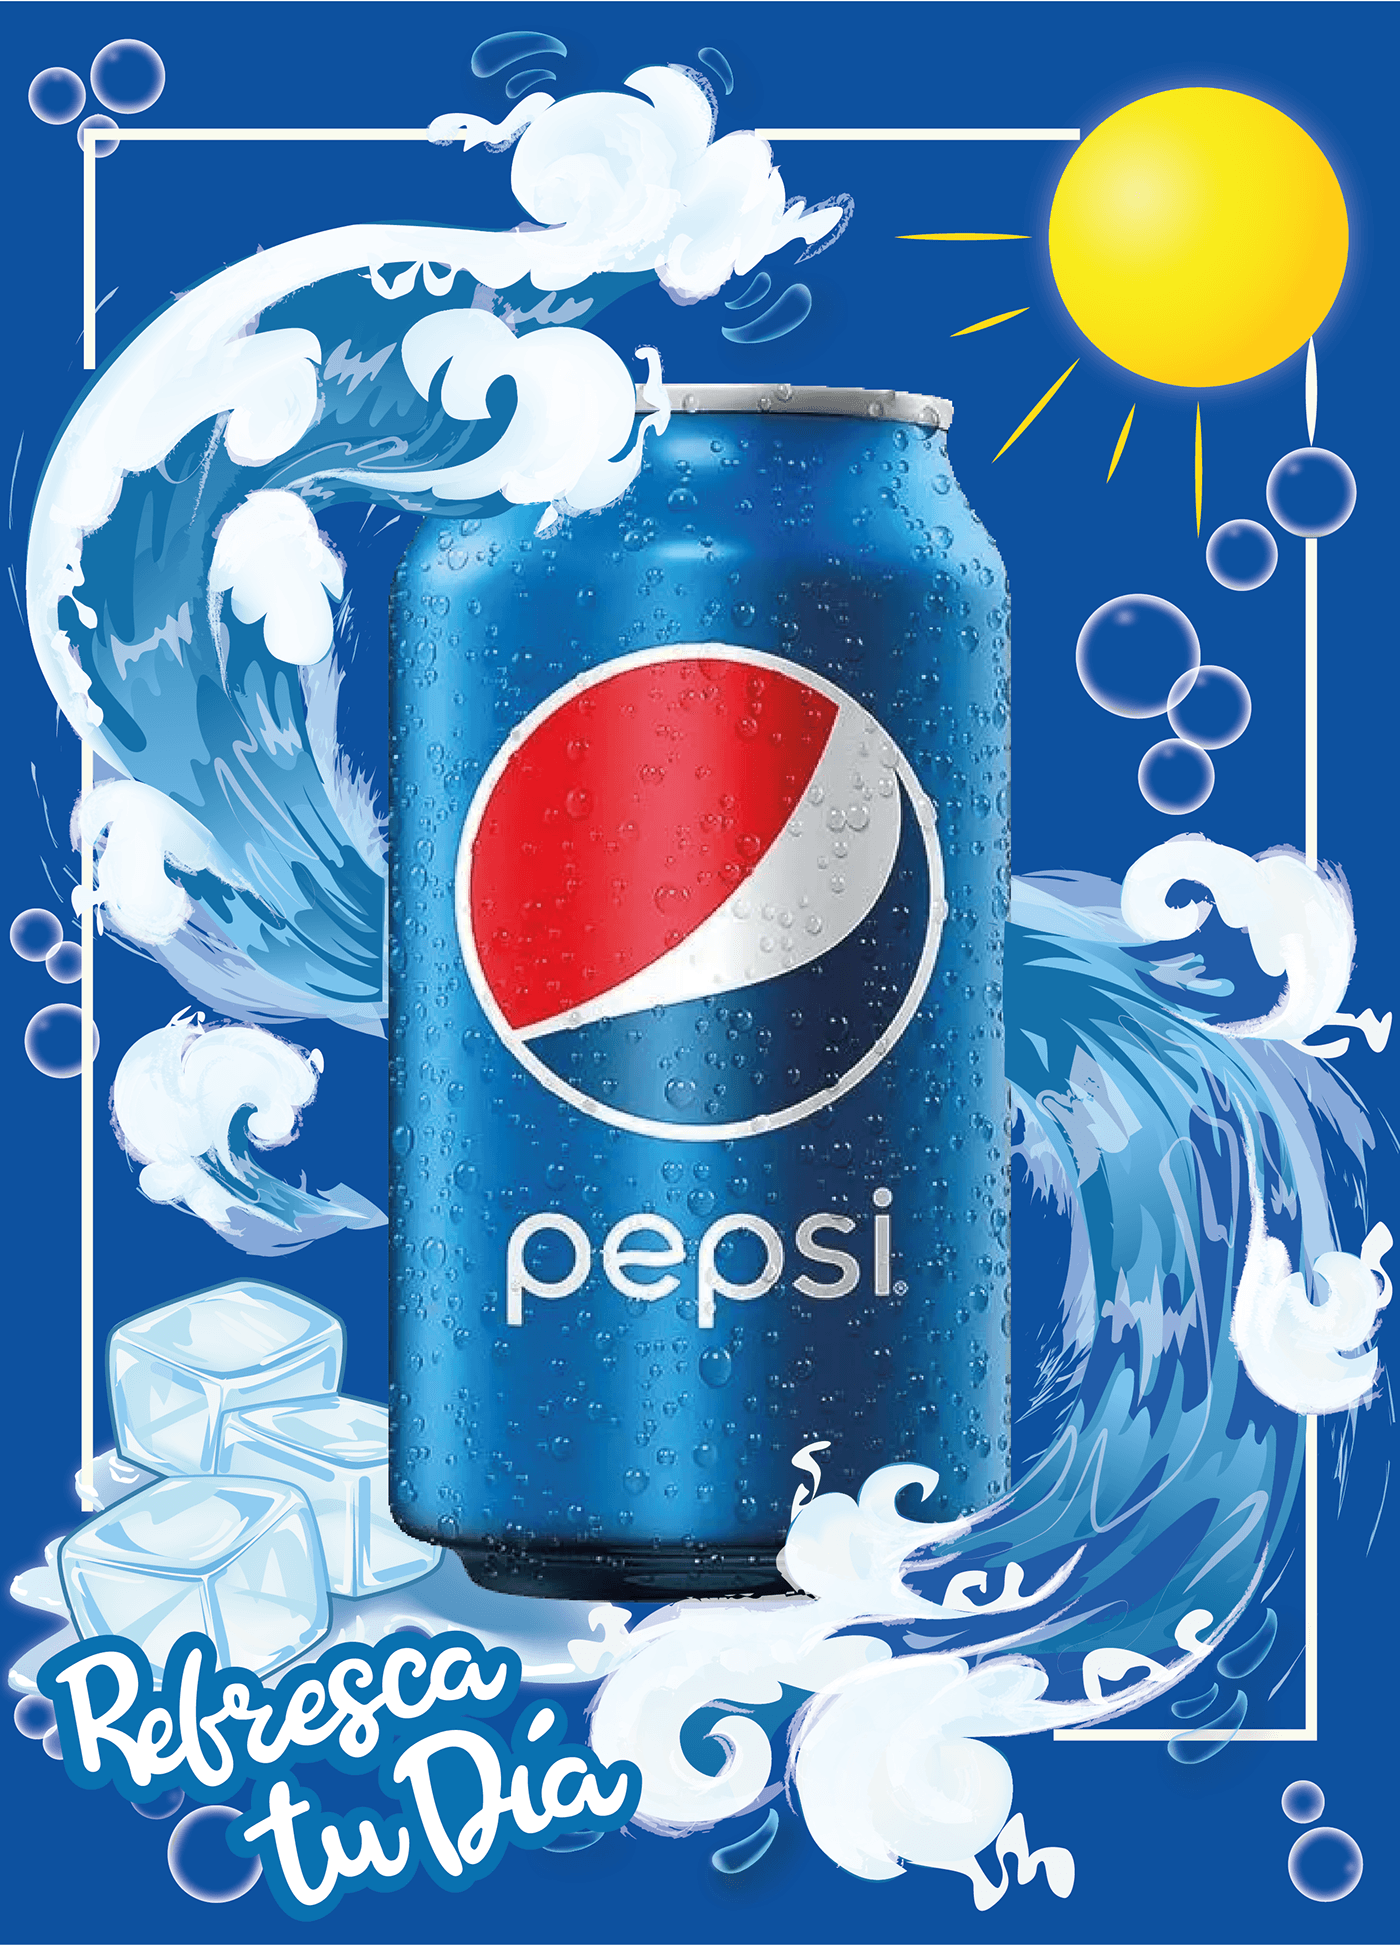 pepsi pepsico marketing   adobe illustrator publicidad diseño gráfico marca pepsi cola soda design